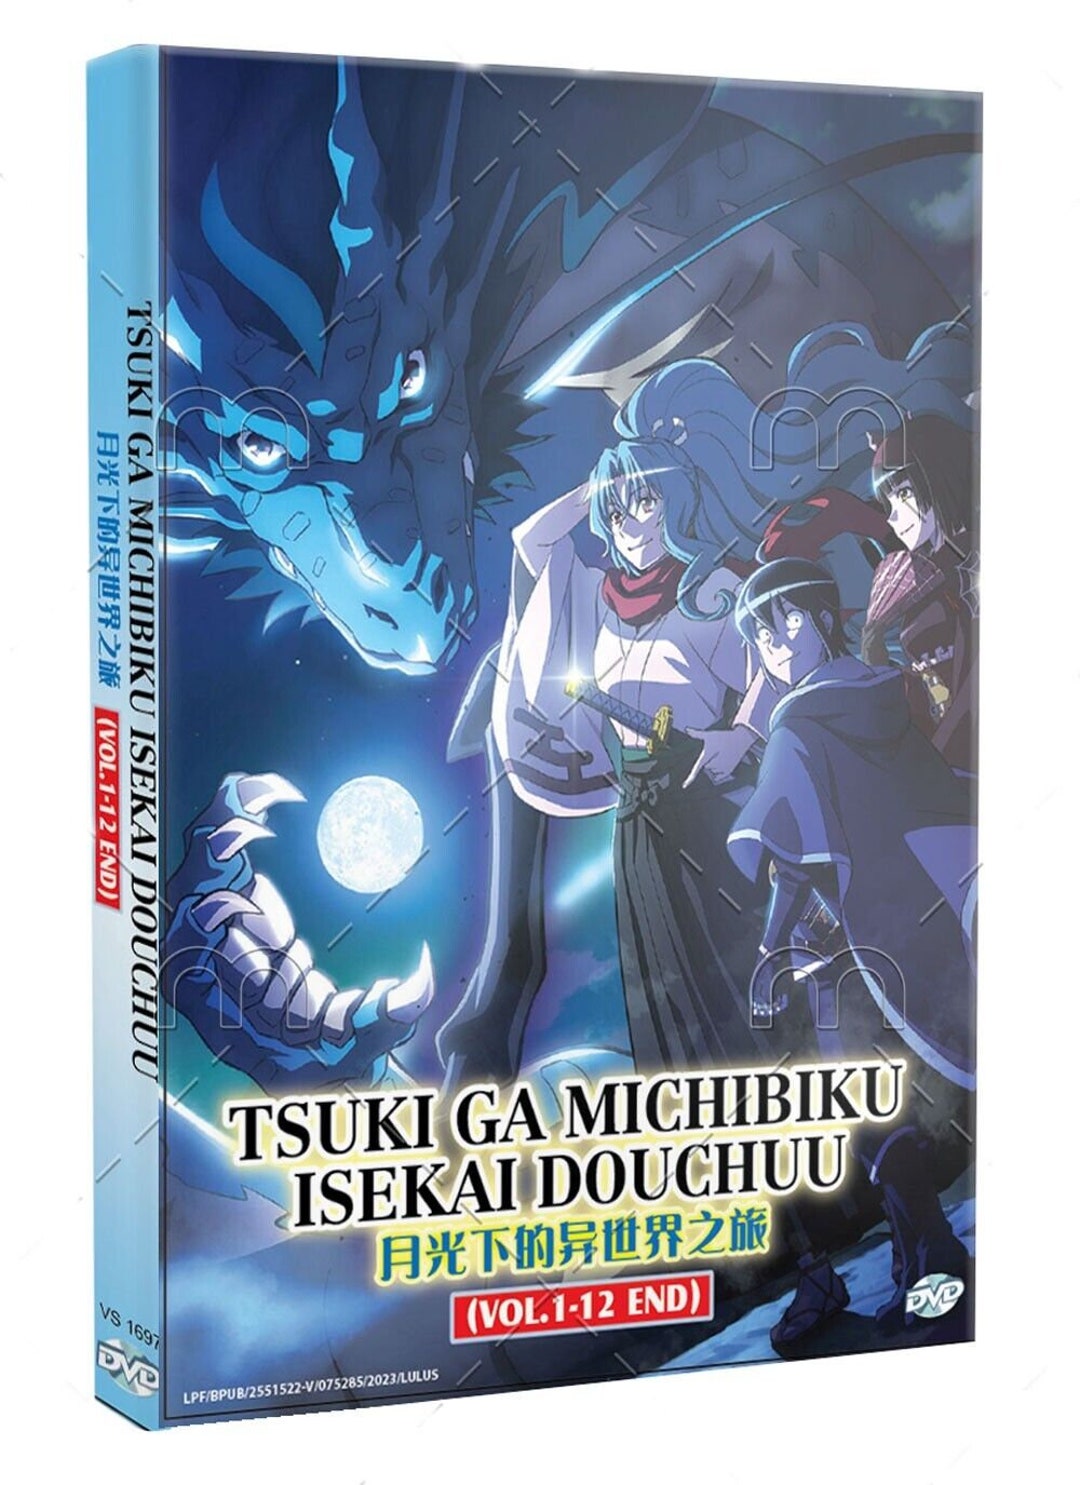 DVD~ANIME TSUKI GA MICHIBIKU ISEKAI DOUCHUU VOL.1-12 END ENGLISH SUBS +  FREE DVD